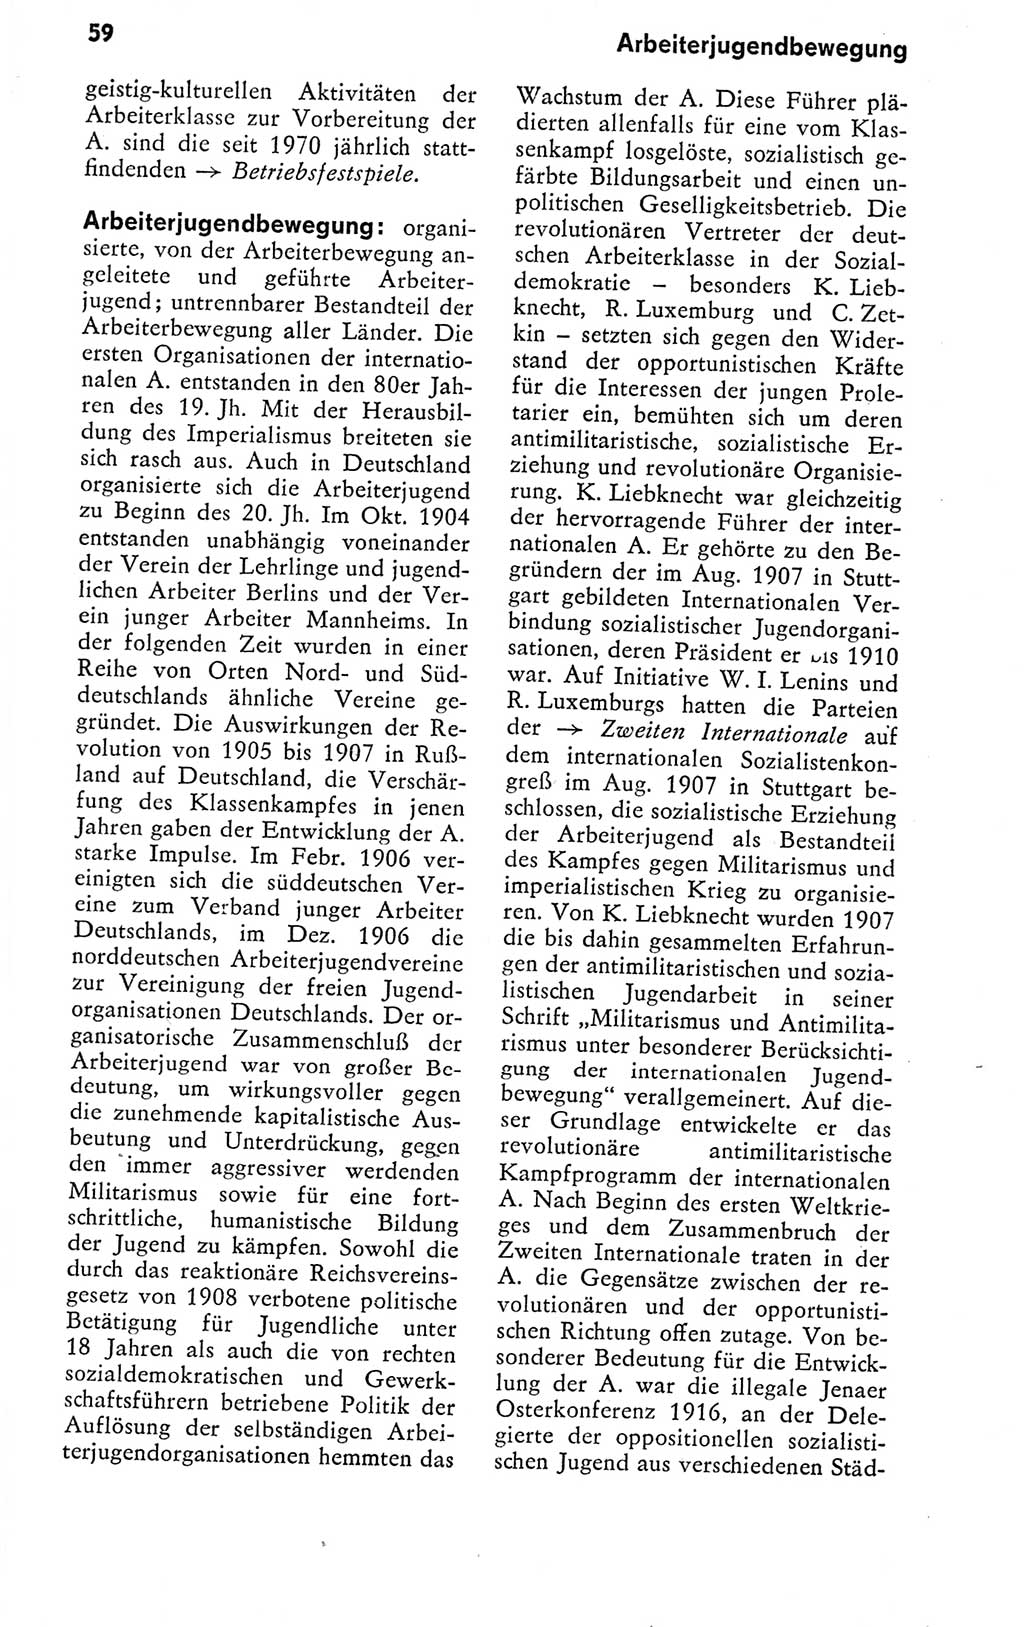 Kleines politisches Wörterbuch [Deutsche Demokratische Republik (DDR)] 1978, Seite 59 (Kl. pol. Wb. DDR 1978, S. 59)